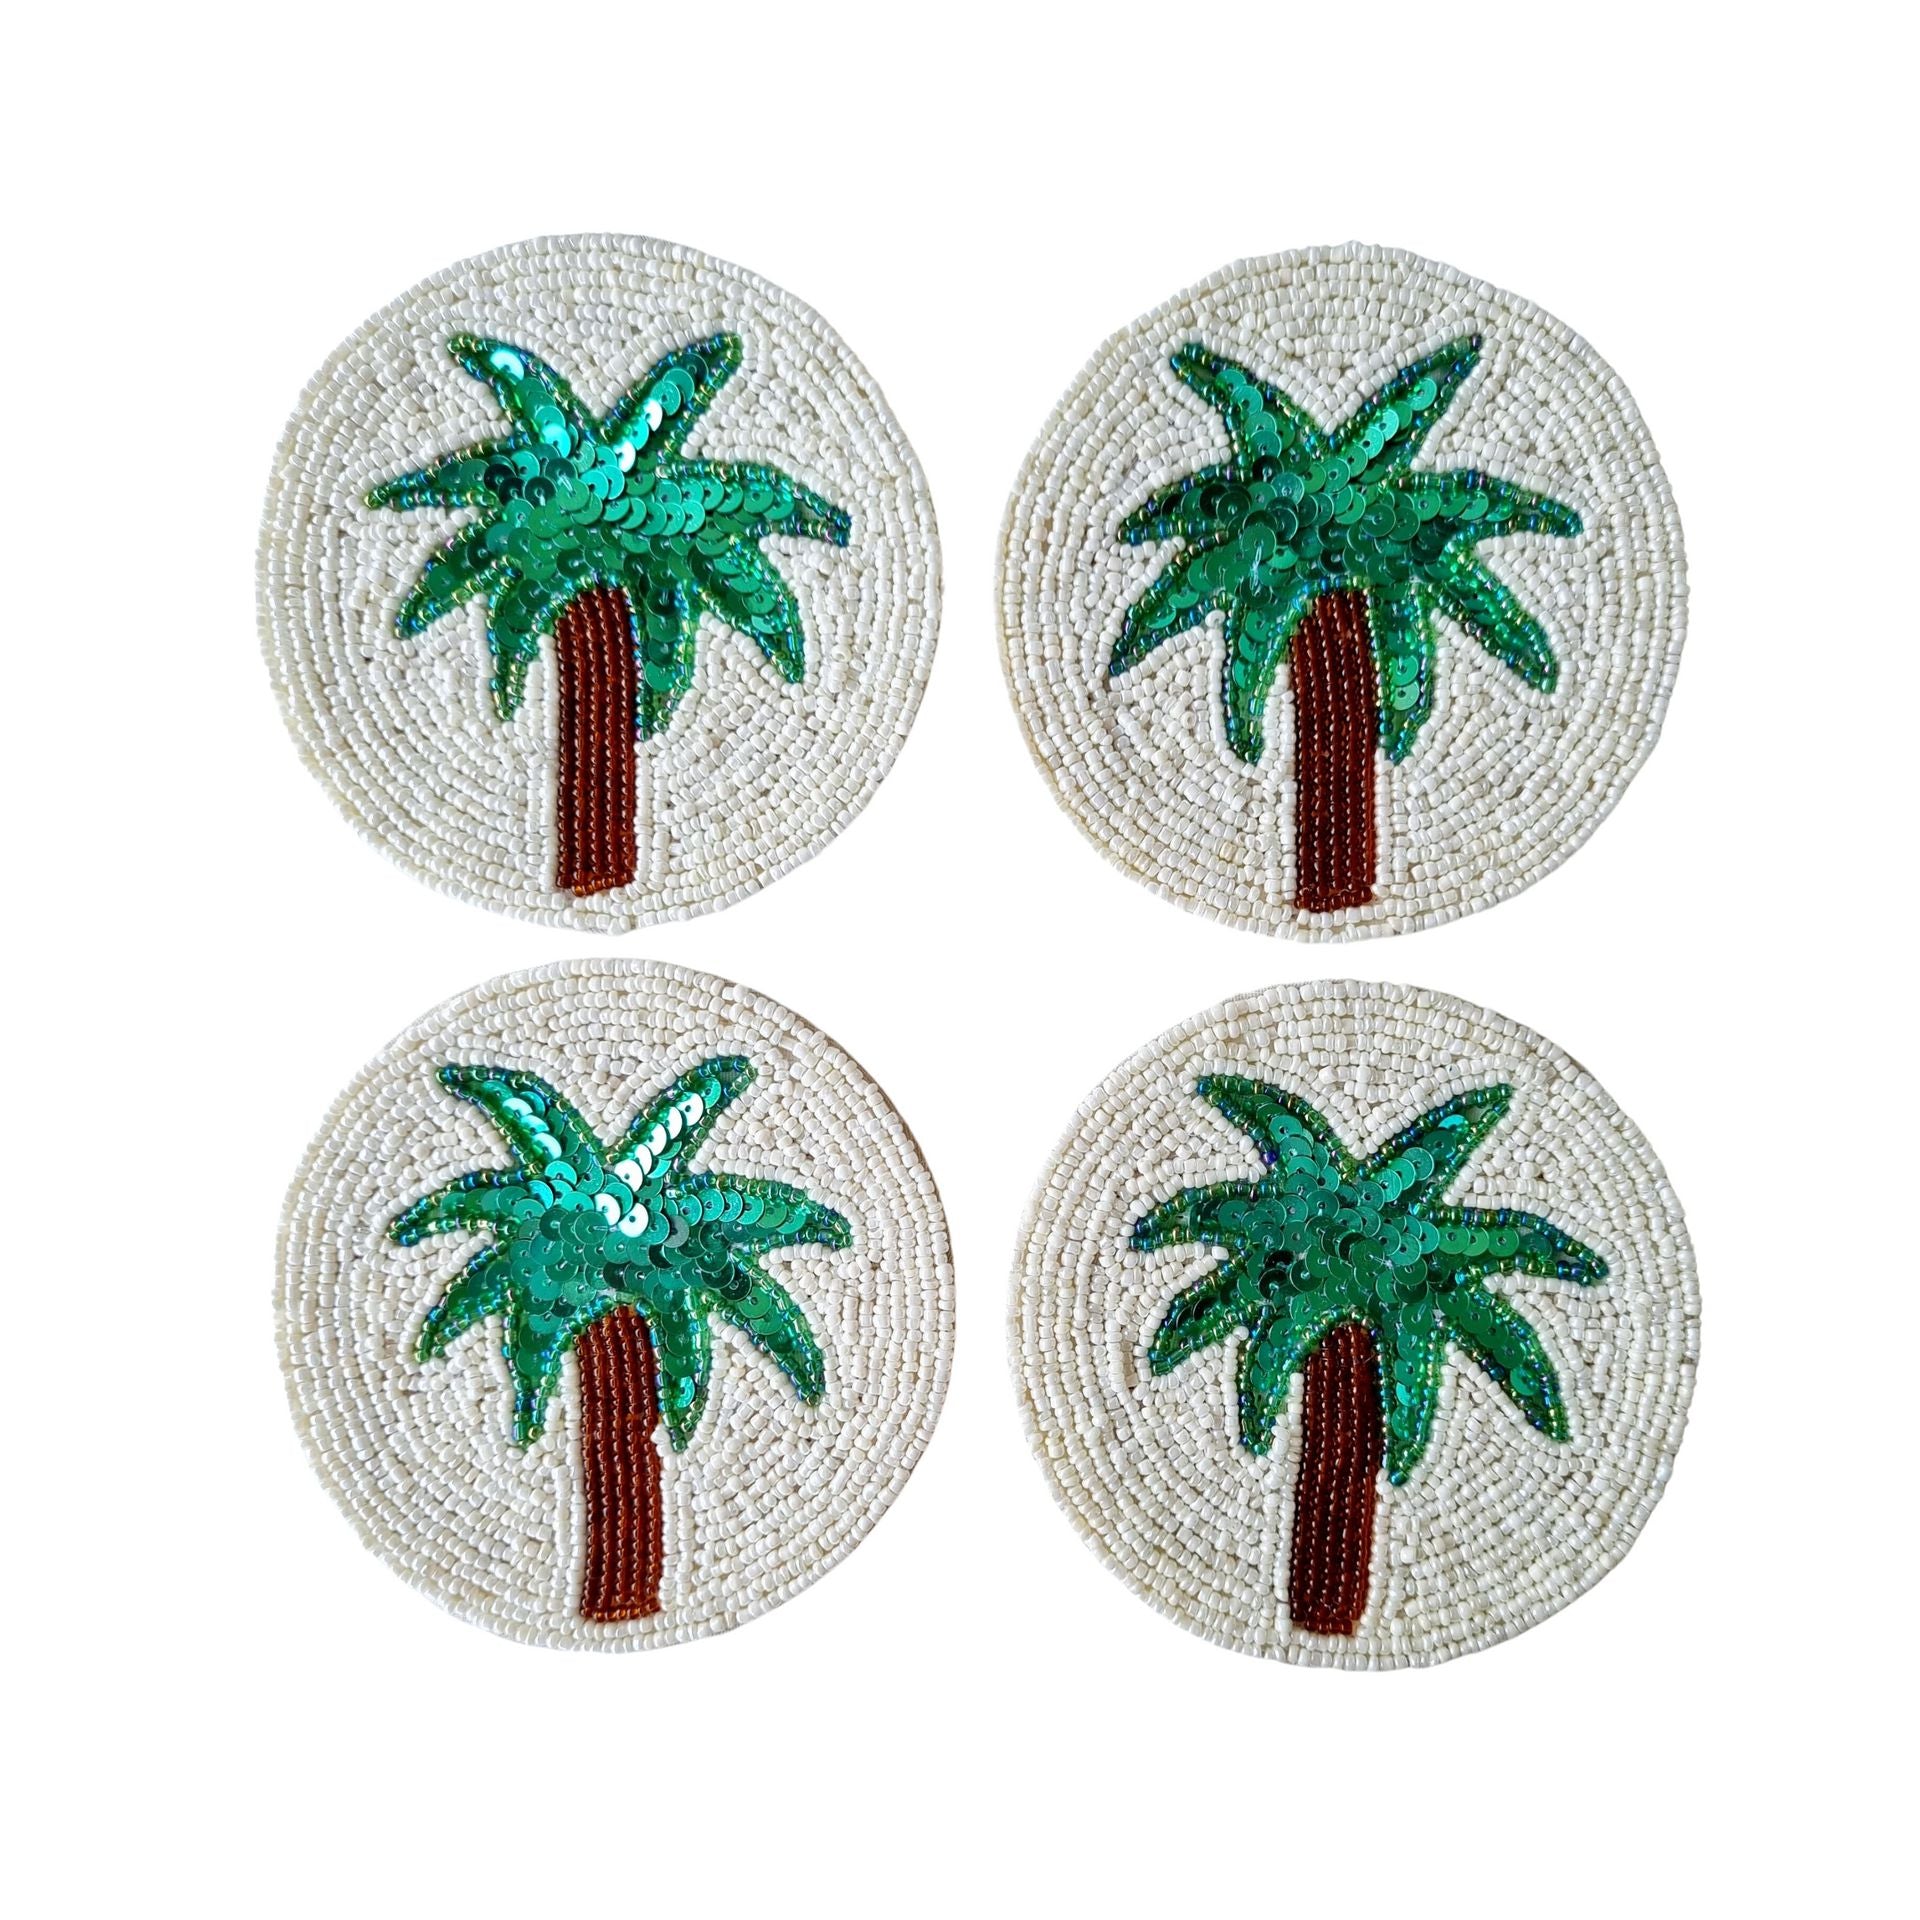 Beaded Coaster Set of 4 - Palm-Decor Items-Zoda-The Bay Room